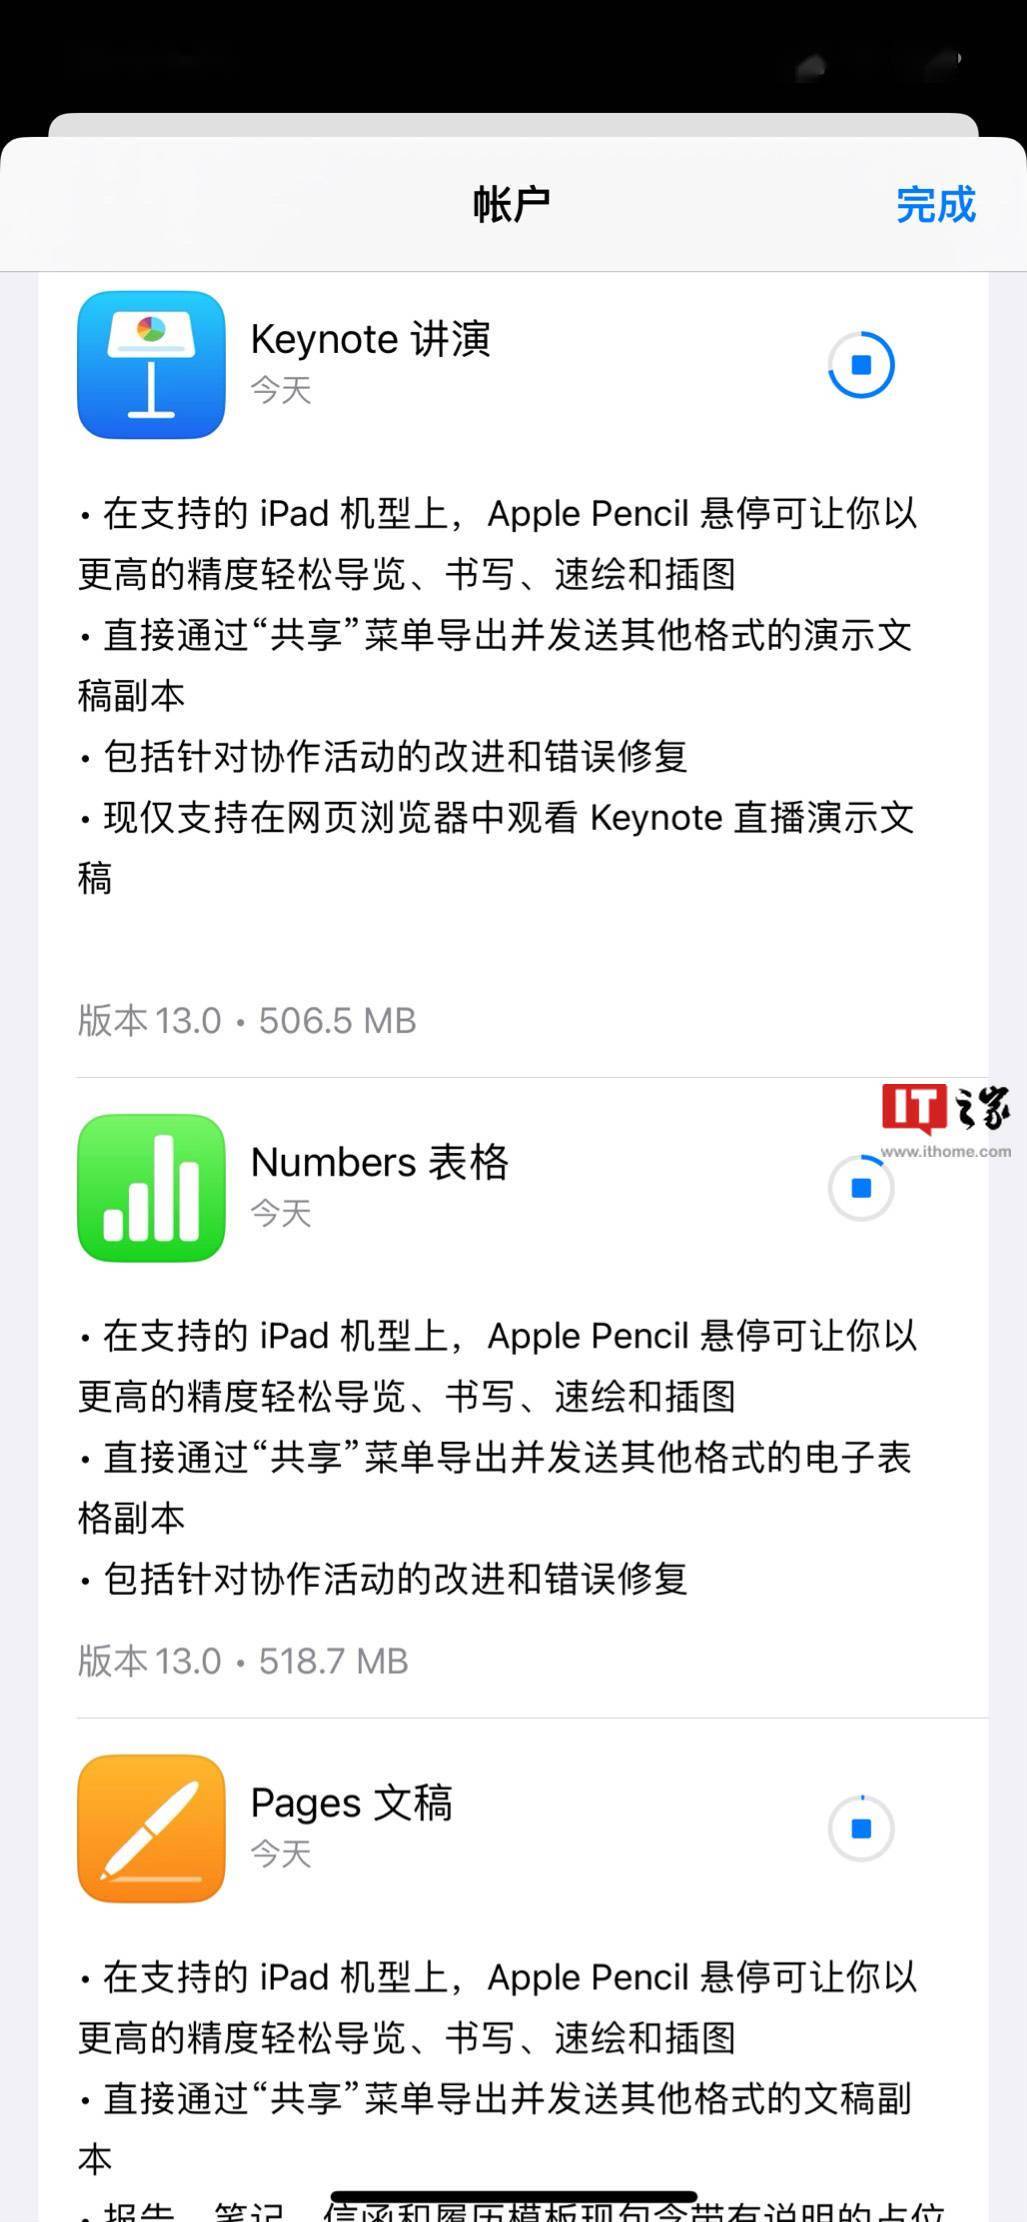 苹果 iWork 三件套Pages / Numbers / Keynote 13.0 发布